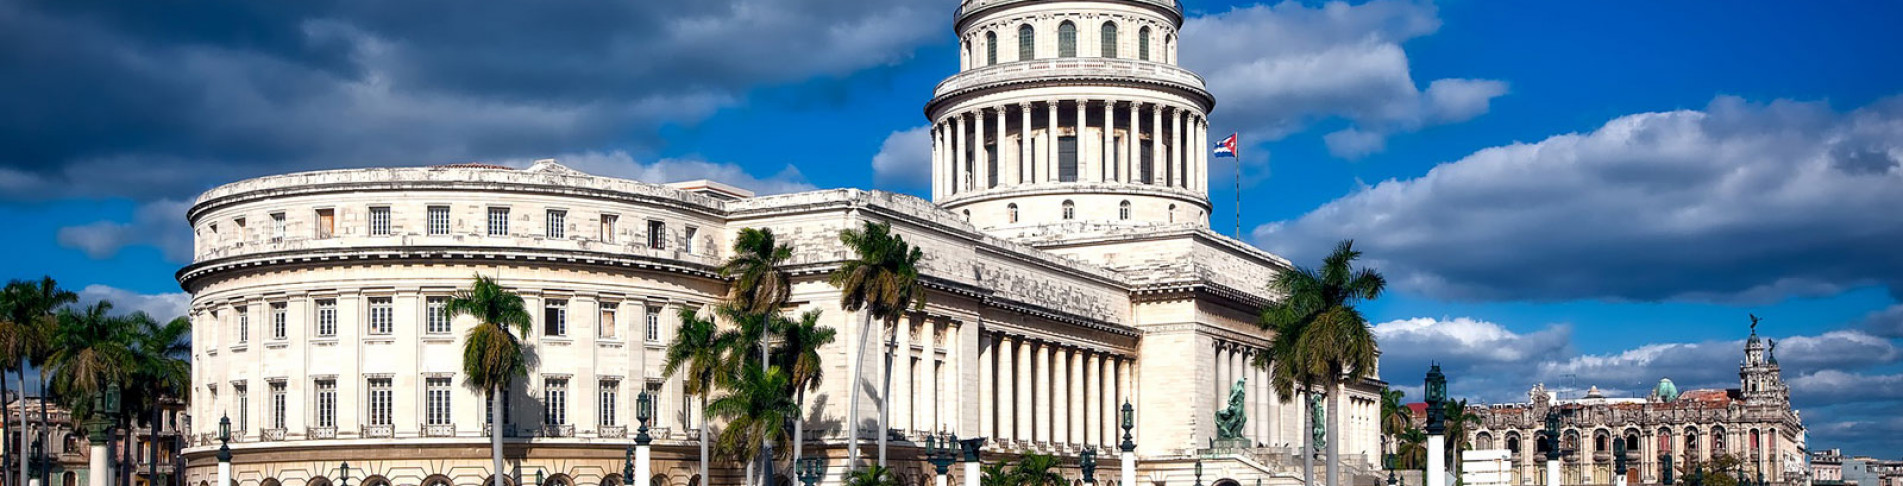 Kuba Urlaub buchen und das Capitol in Havanna sehen